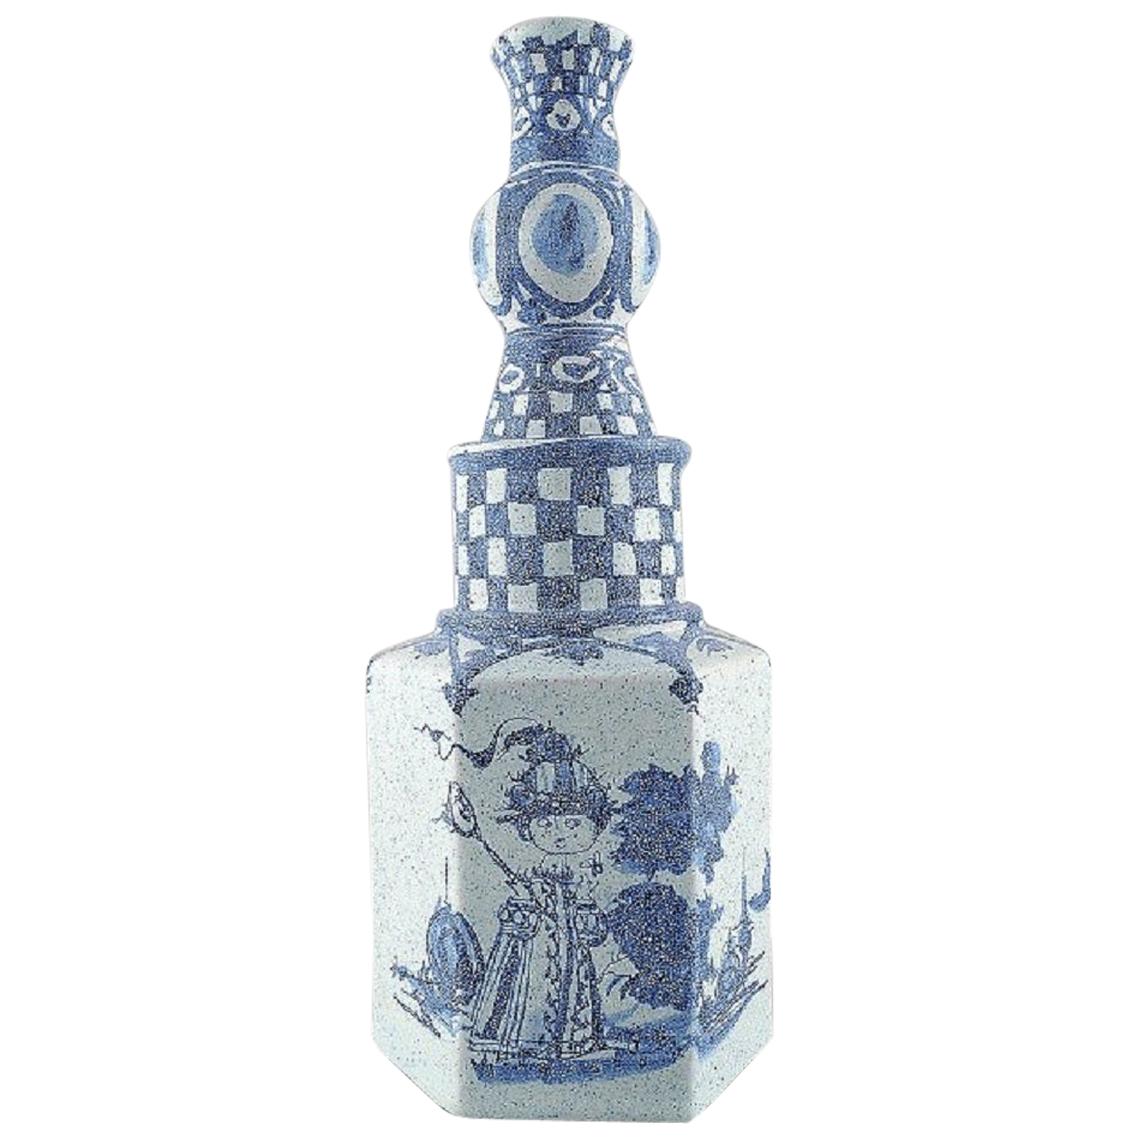 Bjørn Wiinblad, Early Vase in Hand Painted Ceramics, Romantic Garden Scenery